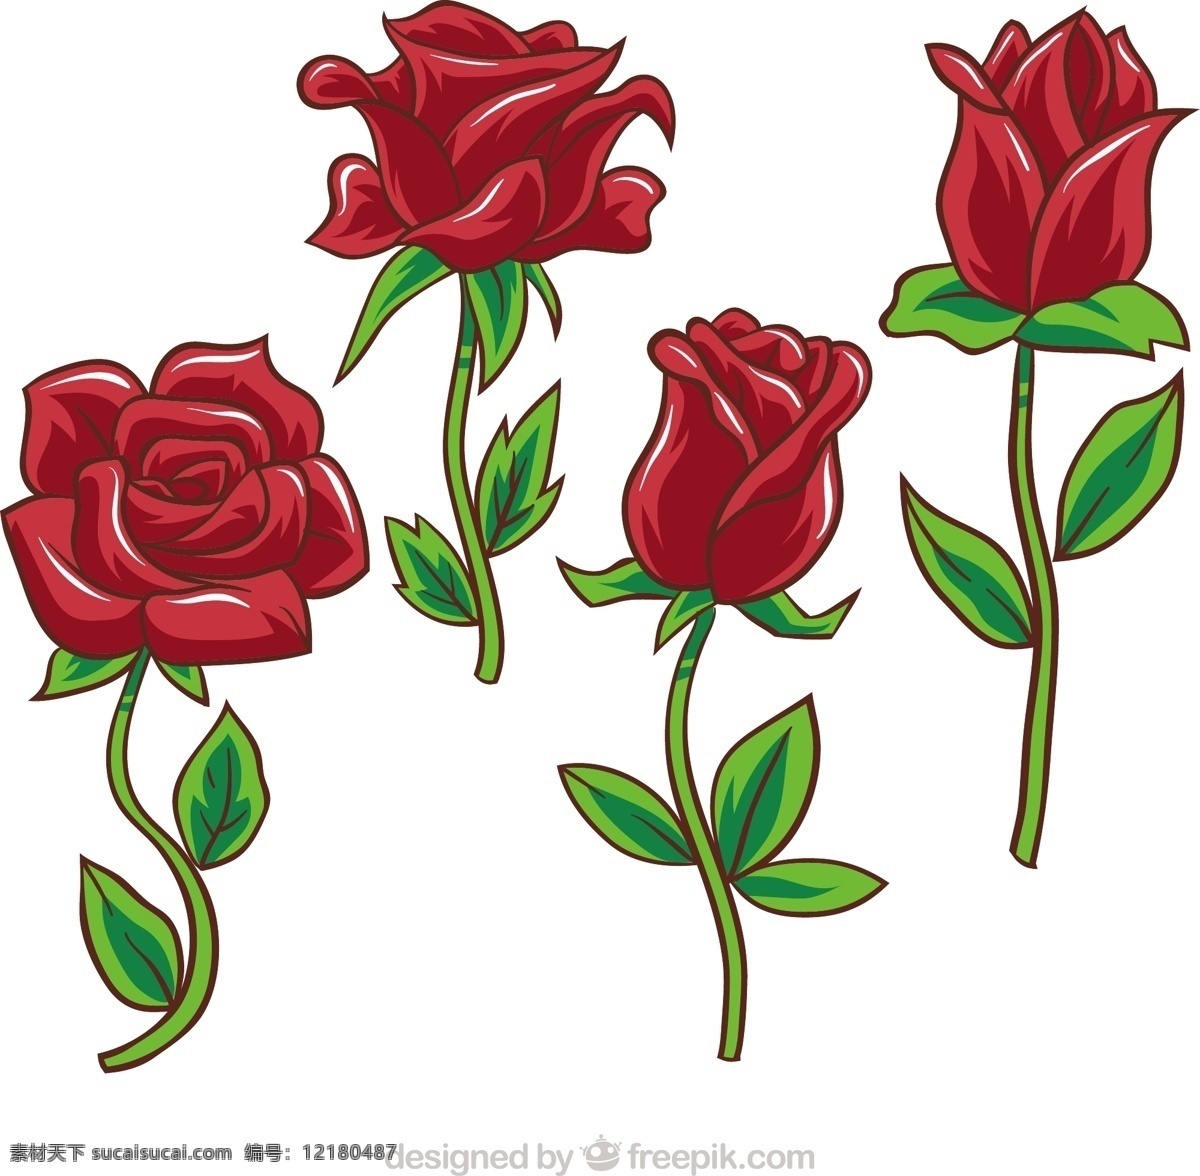 各种 不同 手绘 风格 玫瑰 矢量 设计素材 不同的 手绘风格